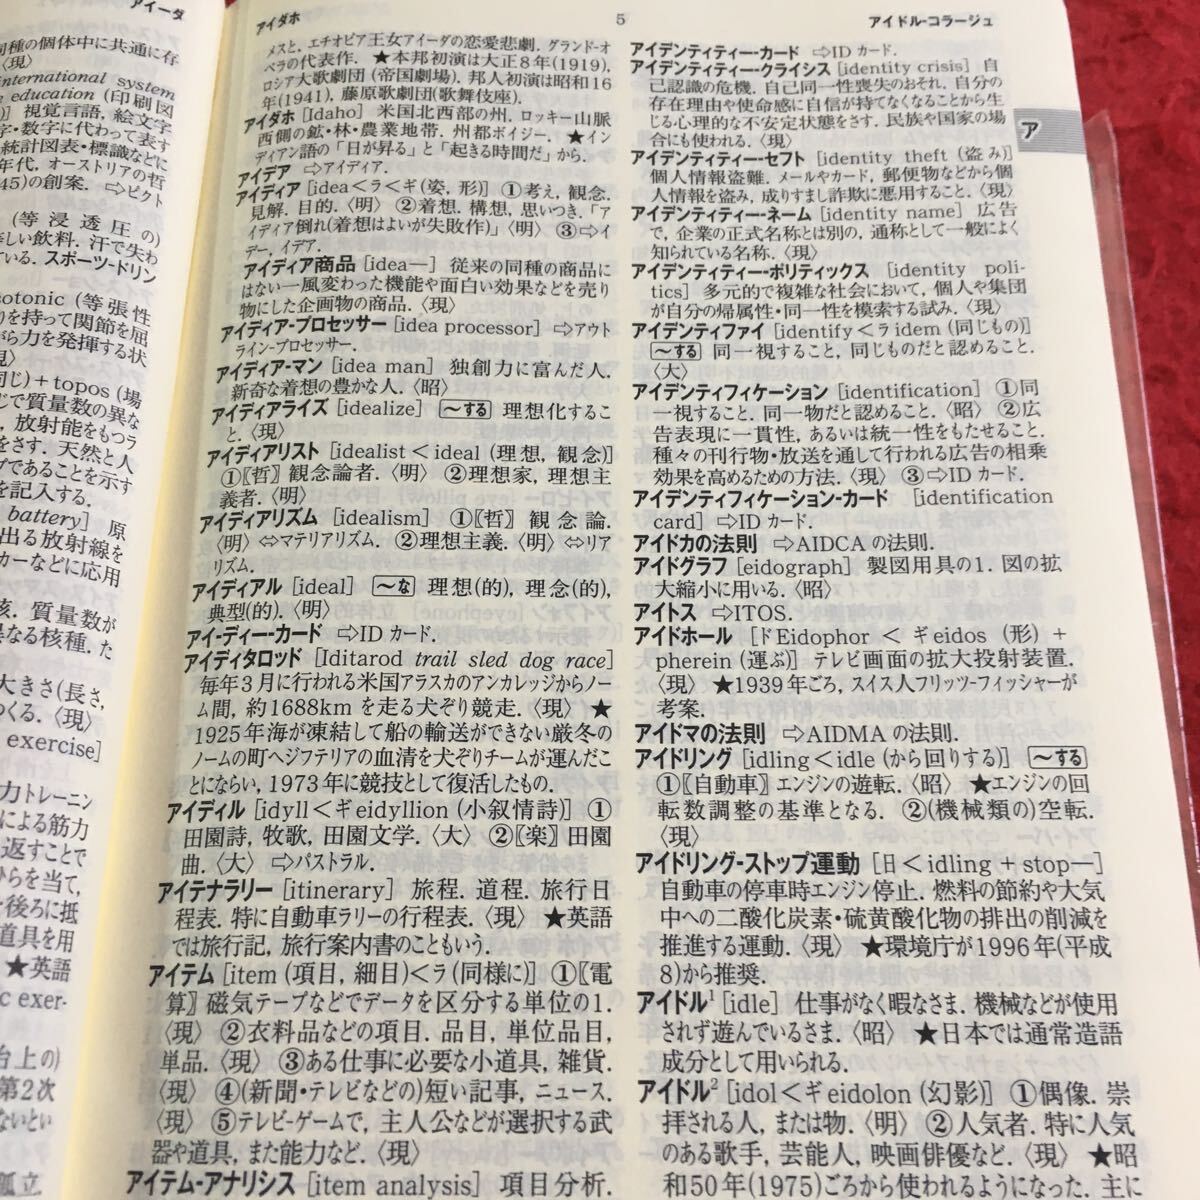 f-216 navy blue sa chair katakana language dictionary no. 4 version three ..*10